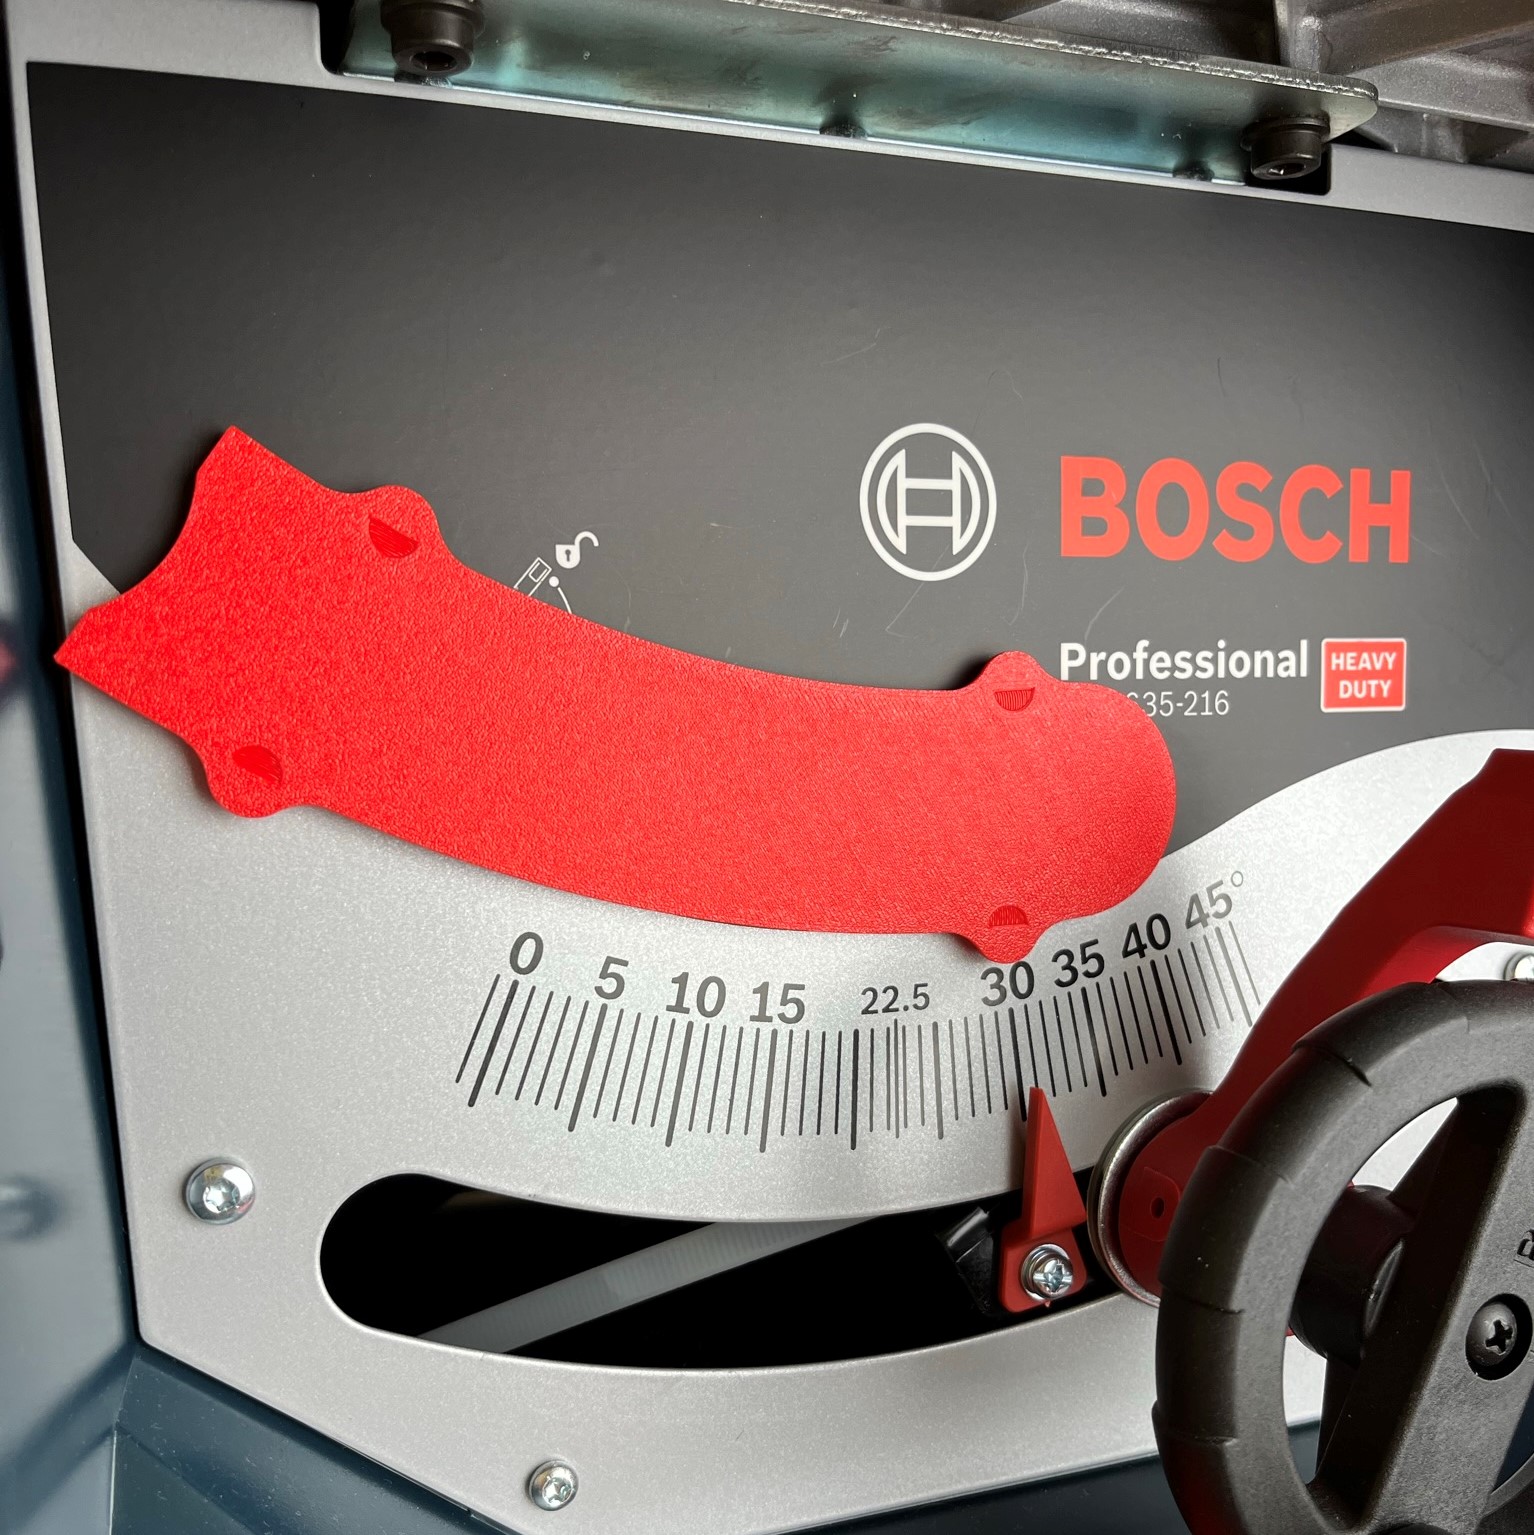 Die 635-216 Abdeckplatten für deine Bosch GTS 635-216. Bestelle jetzt!